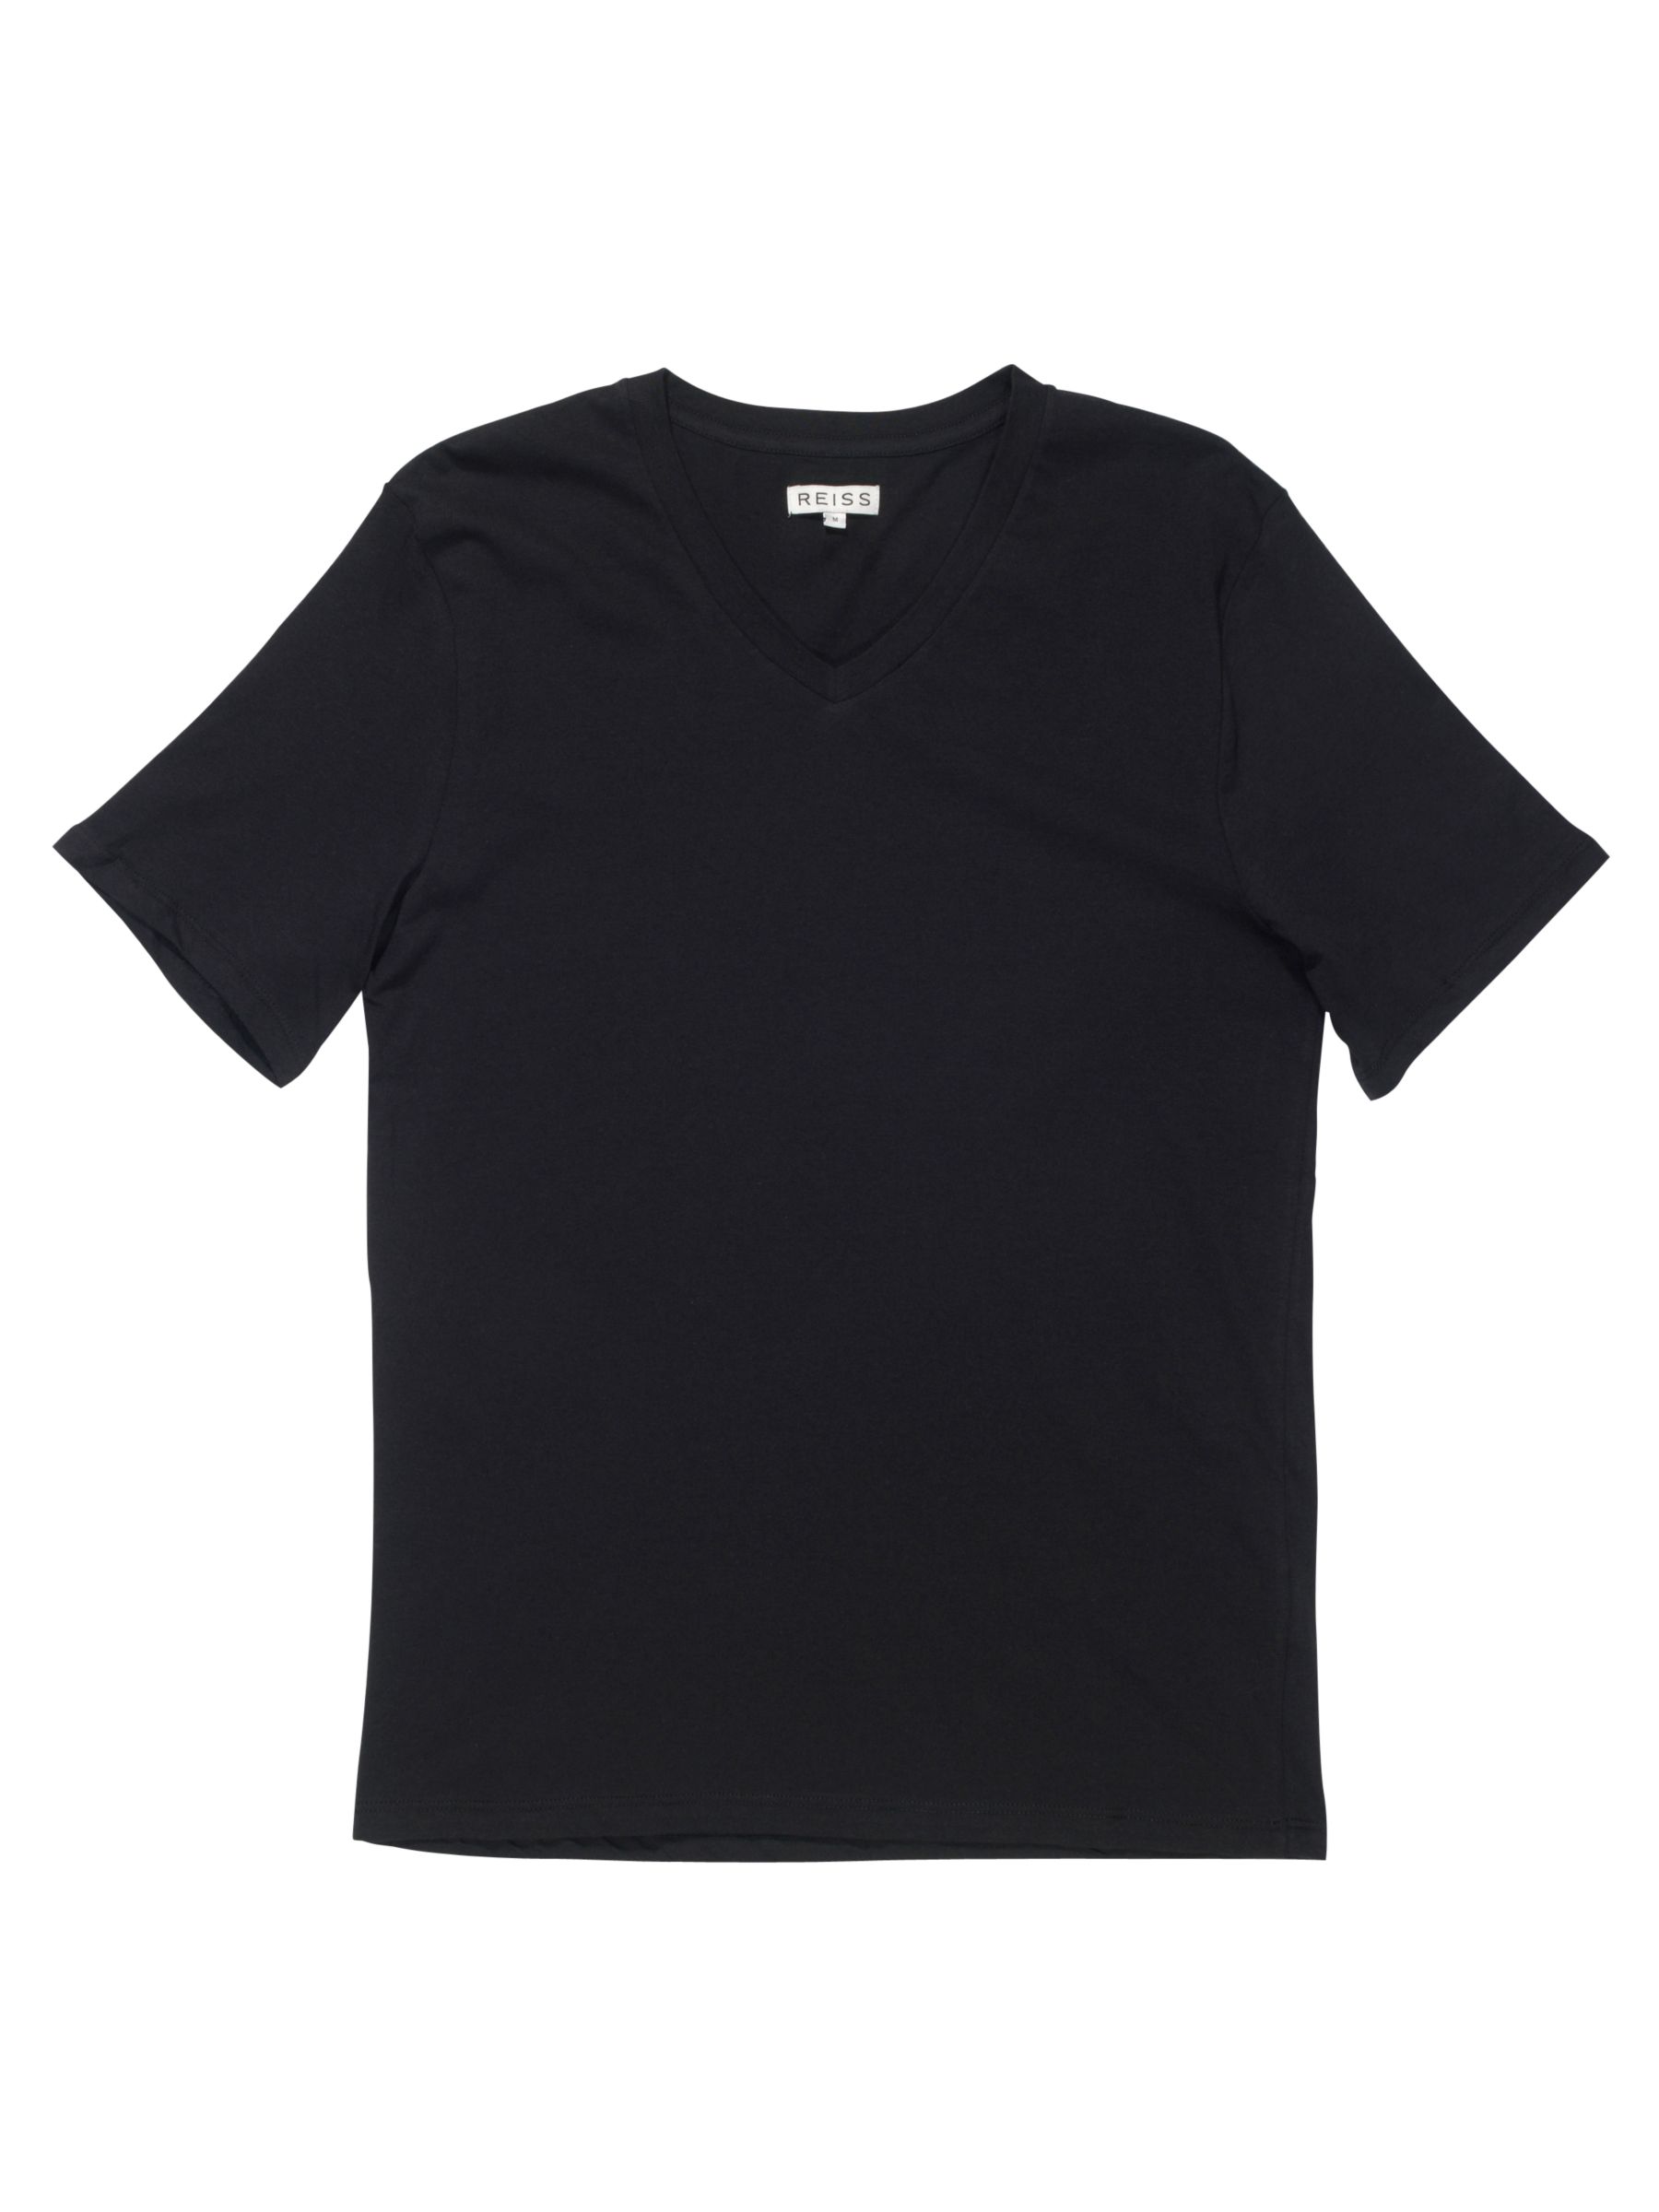 Dayton Basic V Neck T-Shirt, Black